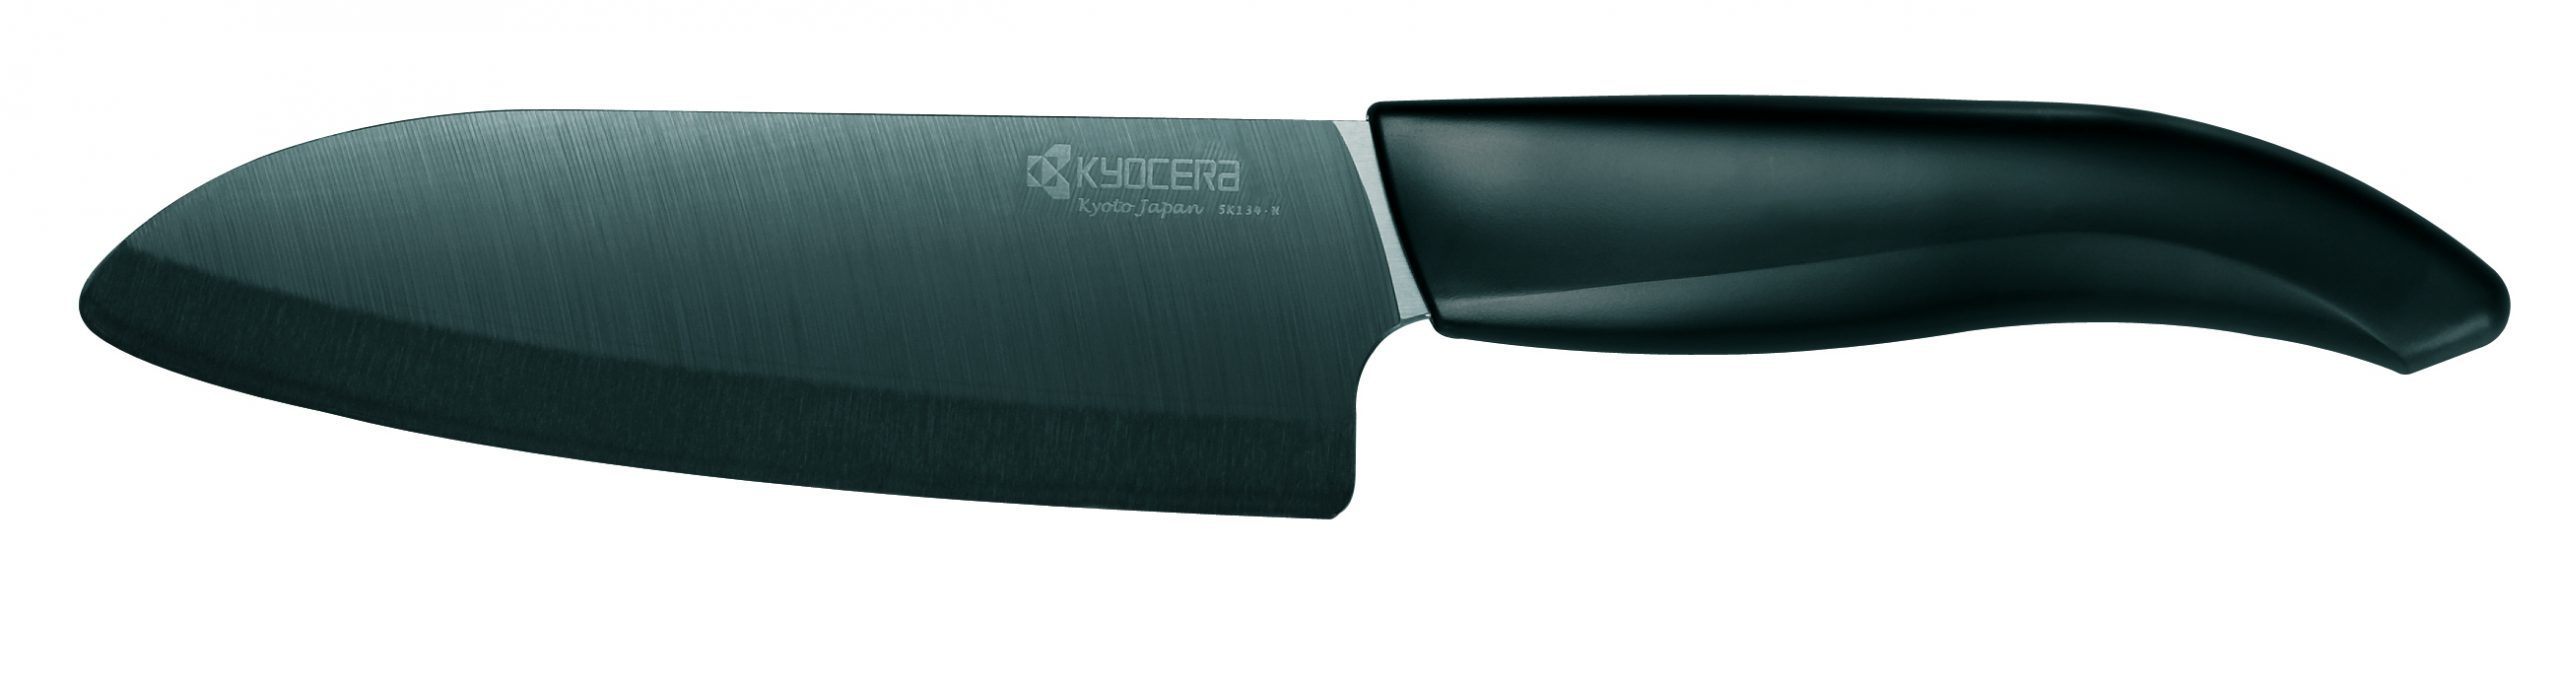 Couteau KYOCERA Chef lame noire 13 cm